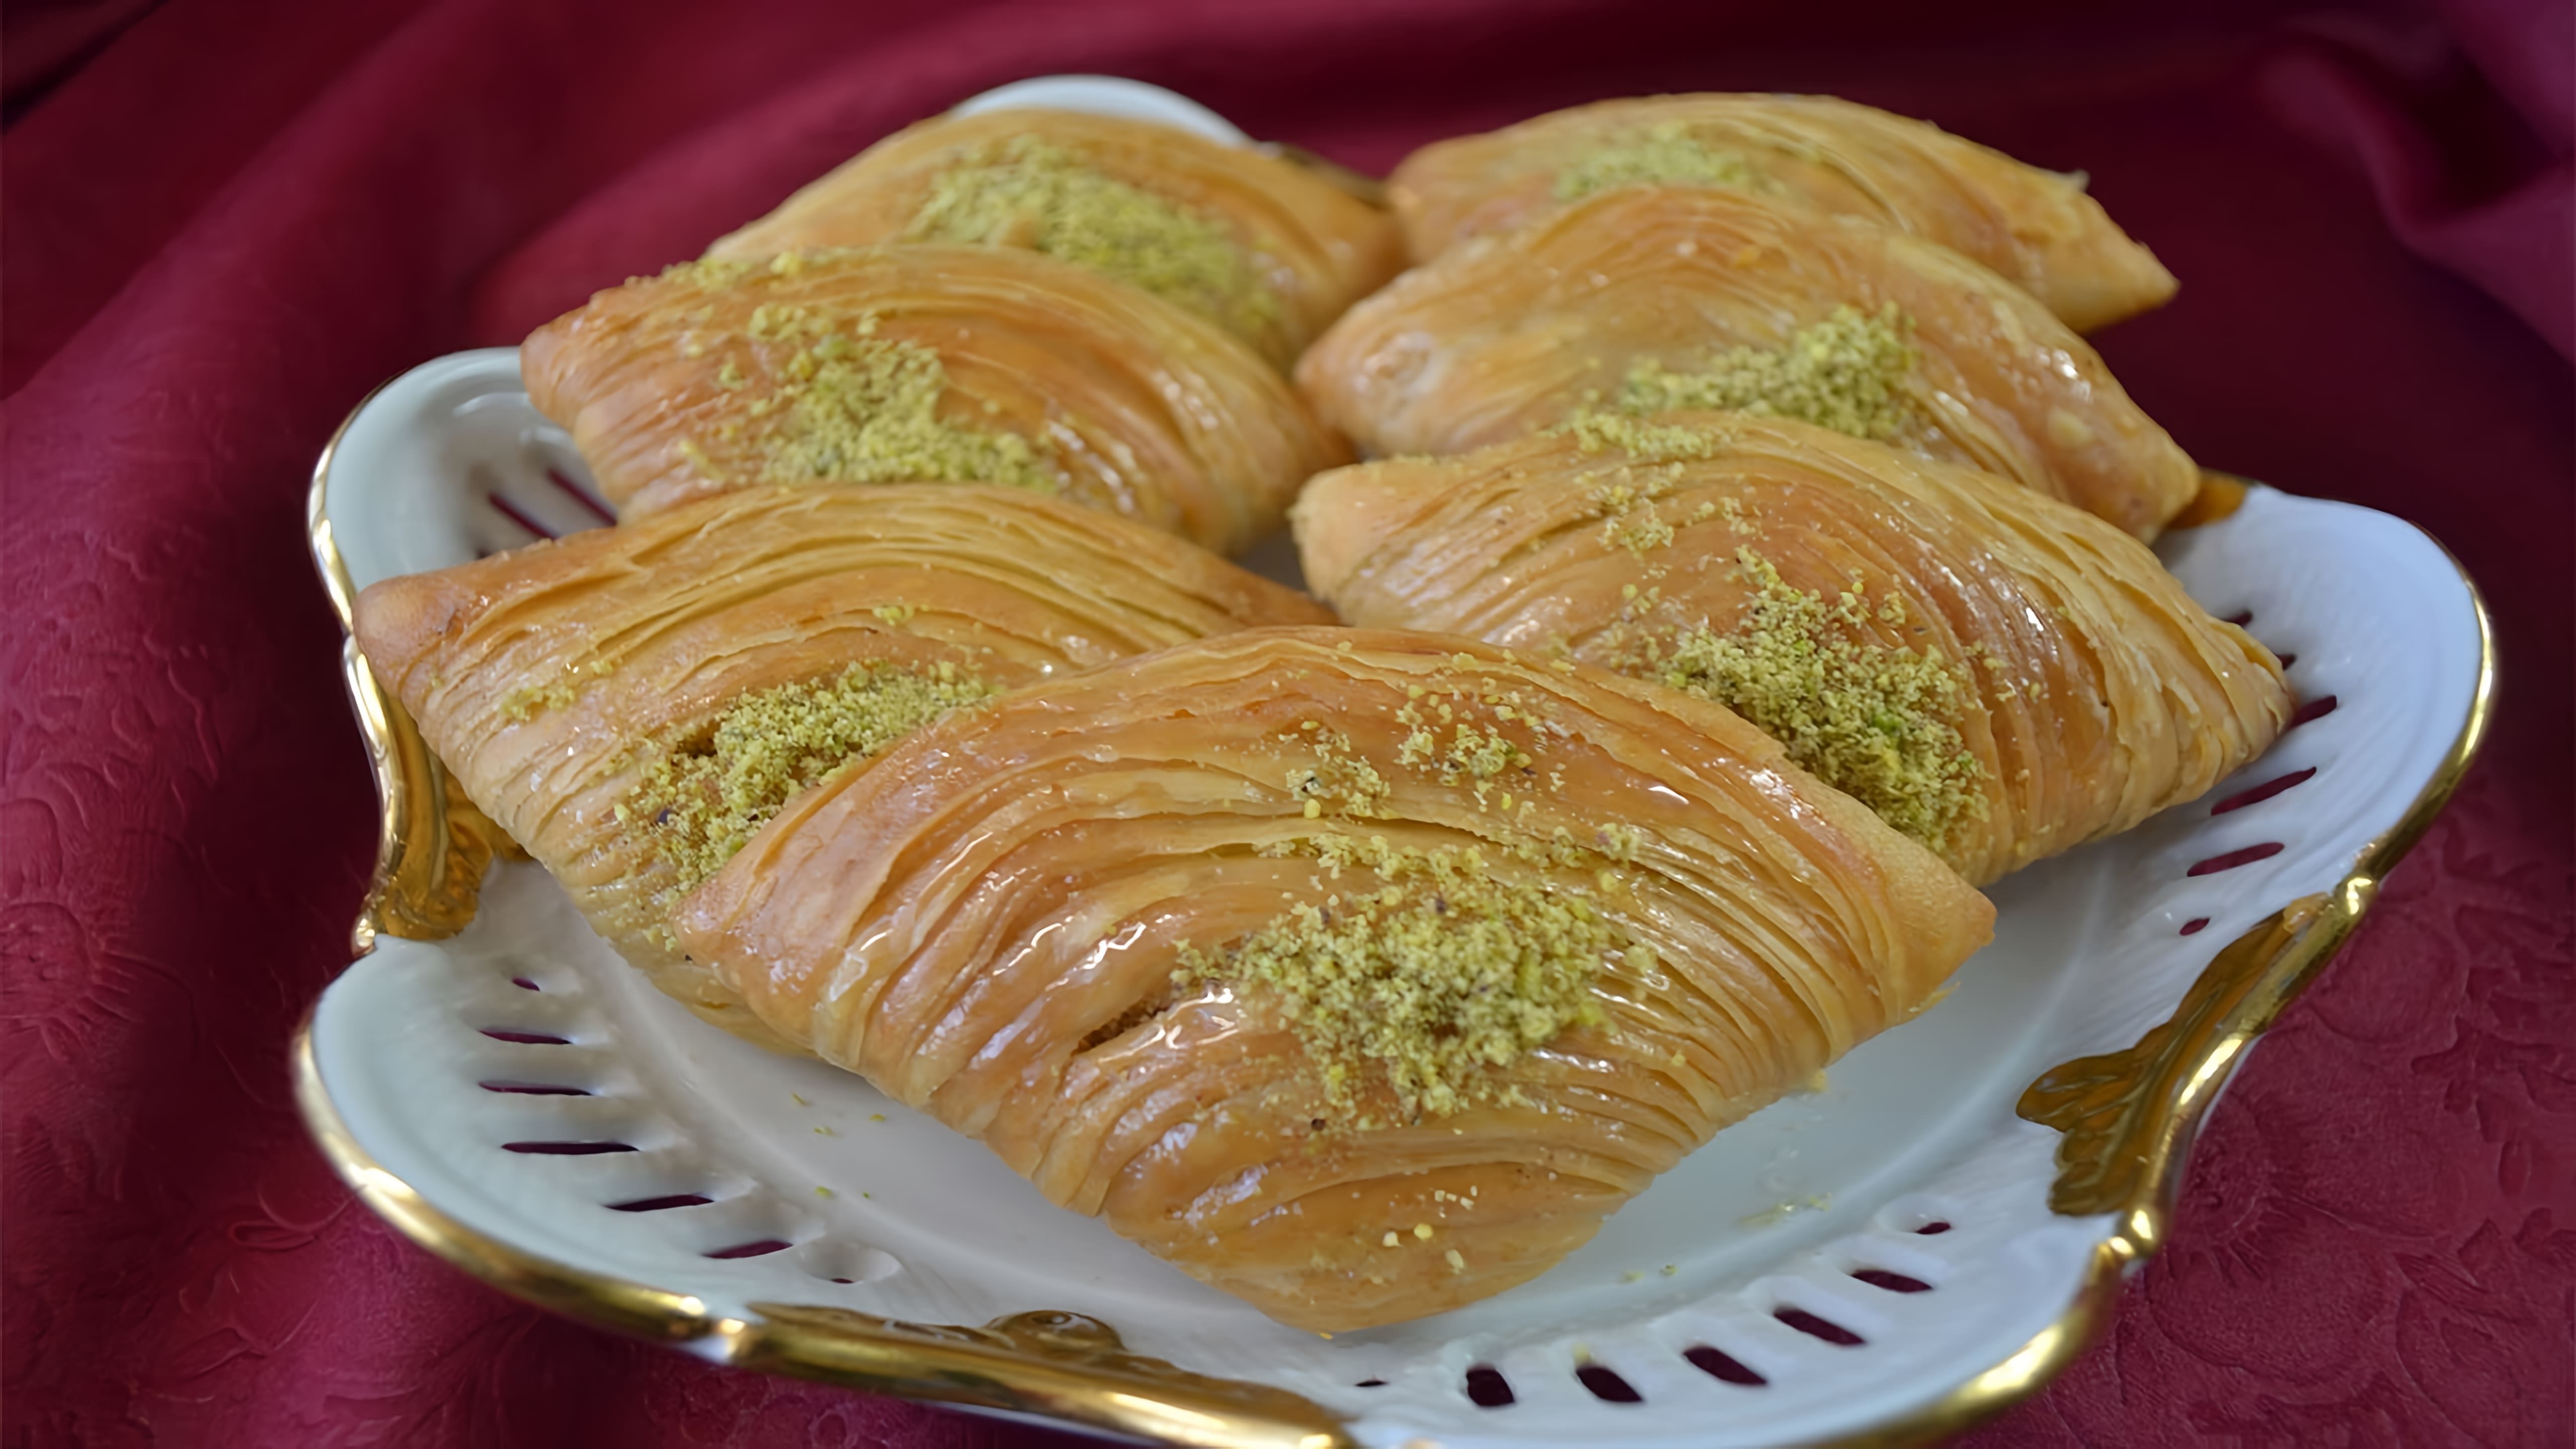 В этом видео демонстрируется процесс приготовления турецкой пахлавы - популярного лакомства, которое можно подавать как на праздничный стол, так и на ежедневное чаепитие